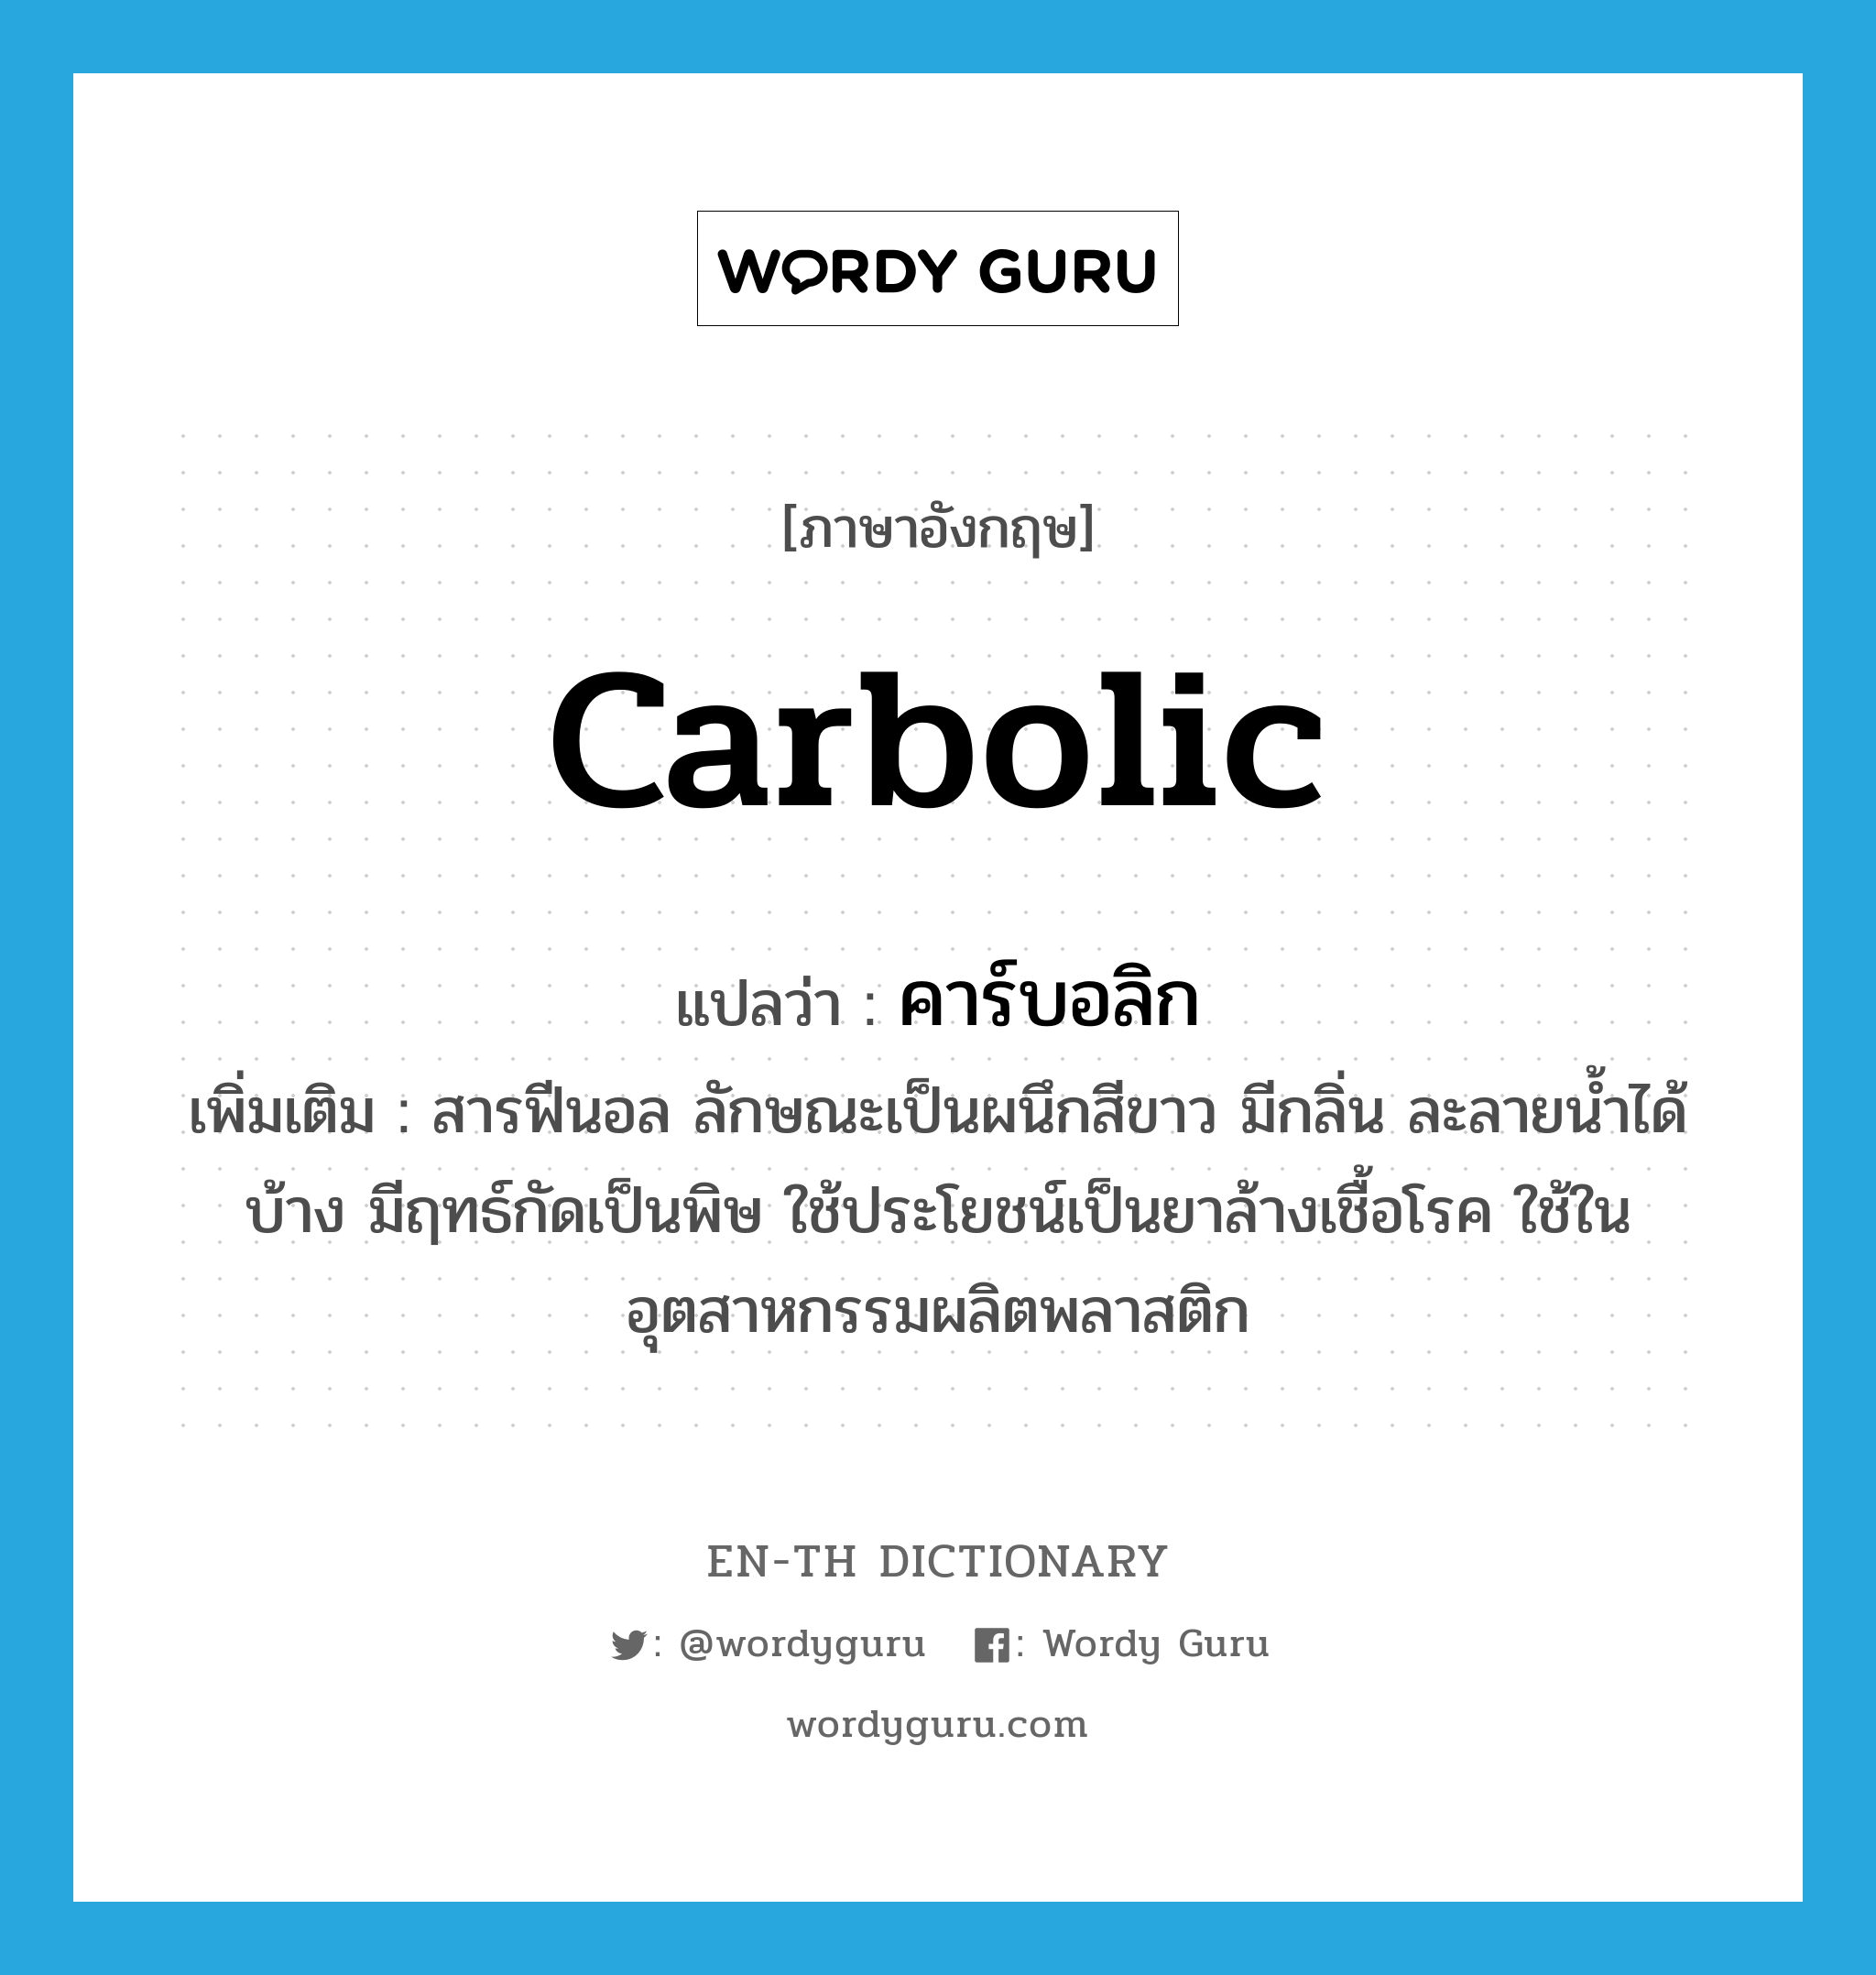 carbolic แปลว่า?, คำศัพท์ภาษาอังกฤษ carbolic แปลว่า คาร์บอลิก ประเภท N เพิ่มเติม สารฟีนอล ลักษณะเป็นผนึกสีขาว มีกลิ่น ละลายน้ำได้บ้าง มีฤทธ์กัดเป็นพิษ ใช้ประโยชน์เป็นยาล้างเชื้อโรค ใช้ในอุตสาหกรรมผลิตพลาสติก หมวด N